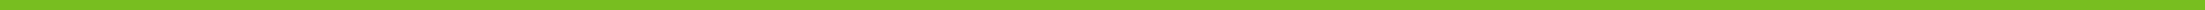 R82 x:panda, grüne Linie (Image block)